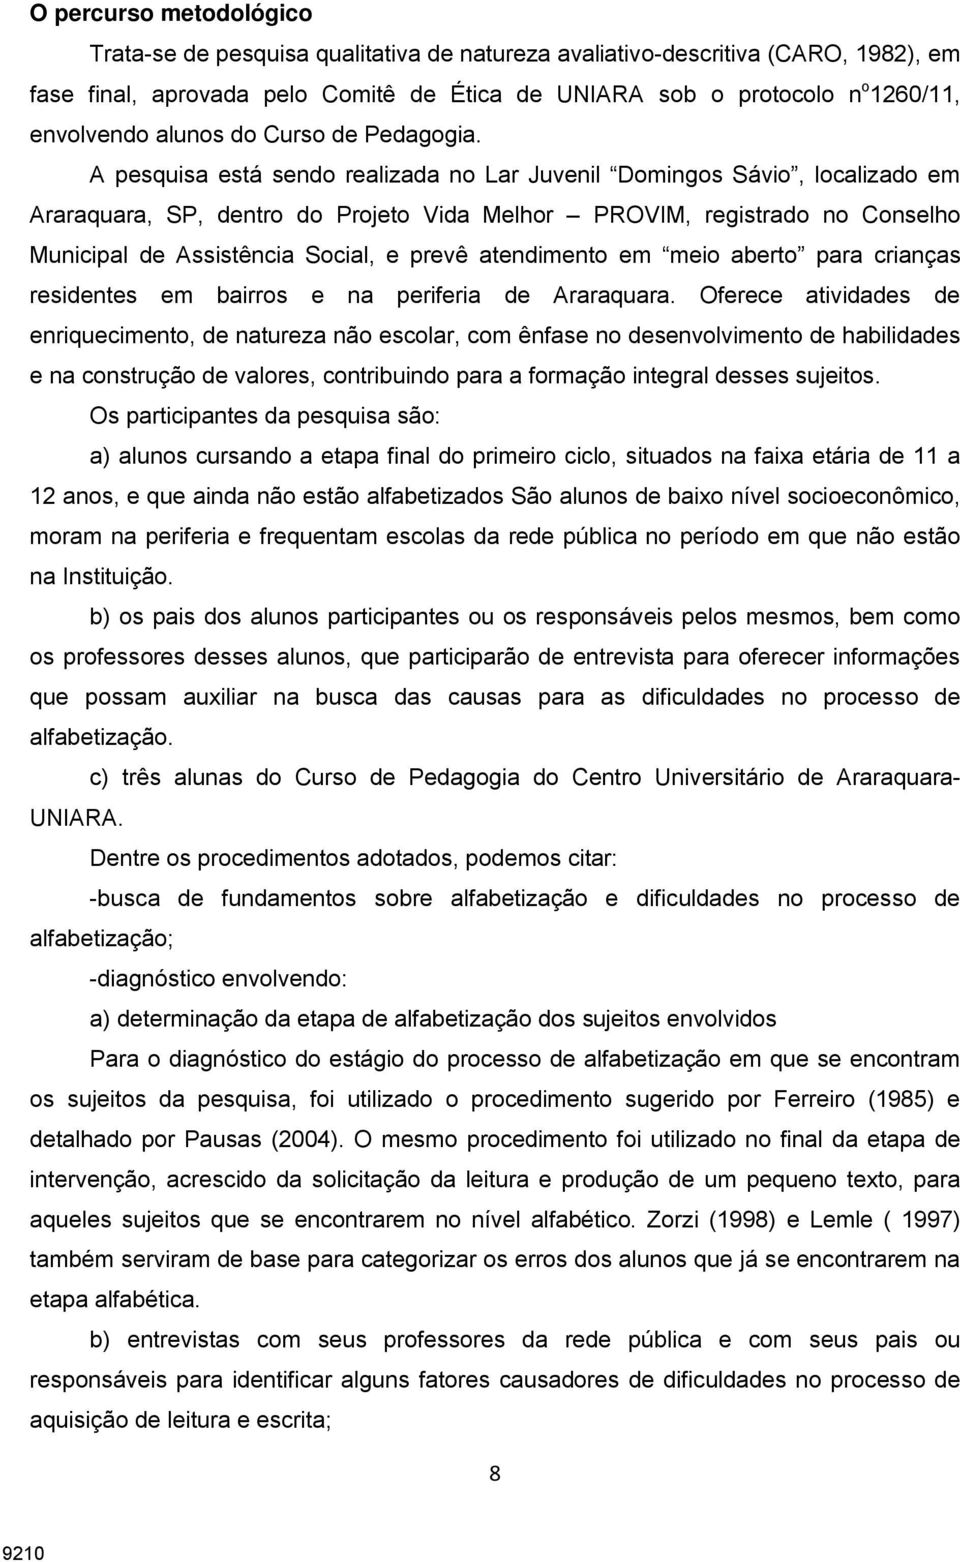 A pesquisa está sendo realizada no Lar Juvenil Domingos Sávio, localizado em Araraquara, SP, dentro do Projeto Vida Melhor PROVIM, registrado no Conselho Municipal de Assistência Social, e prevê